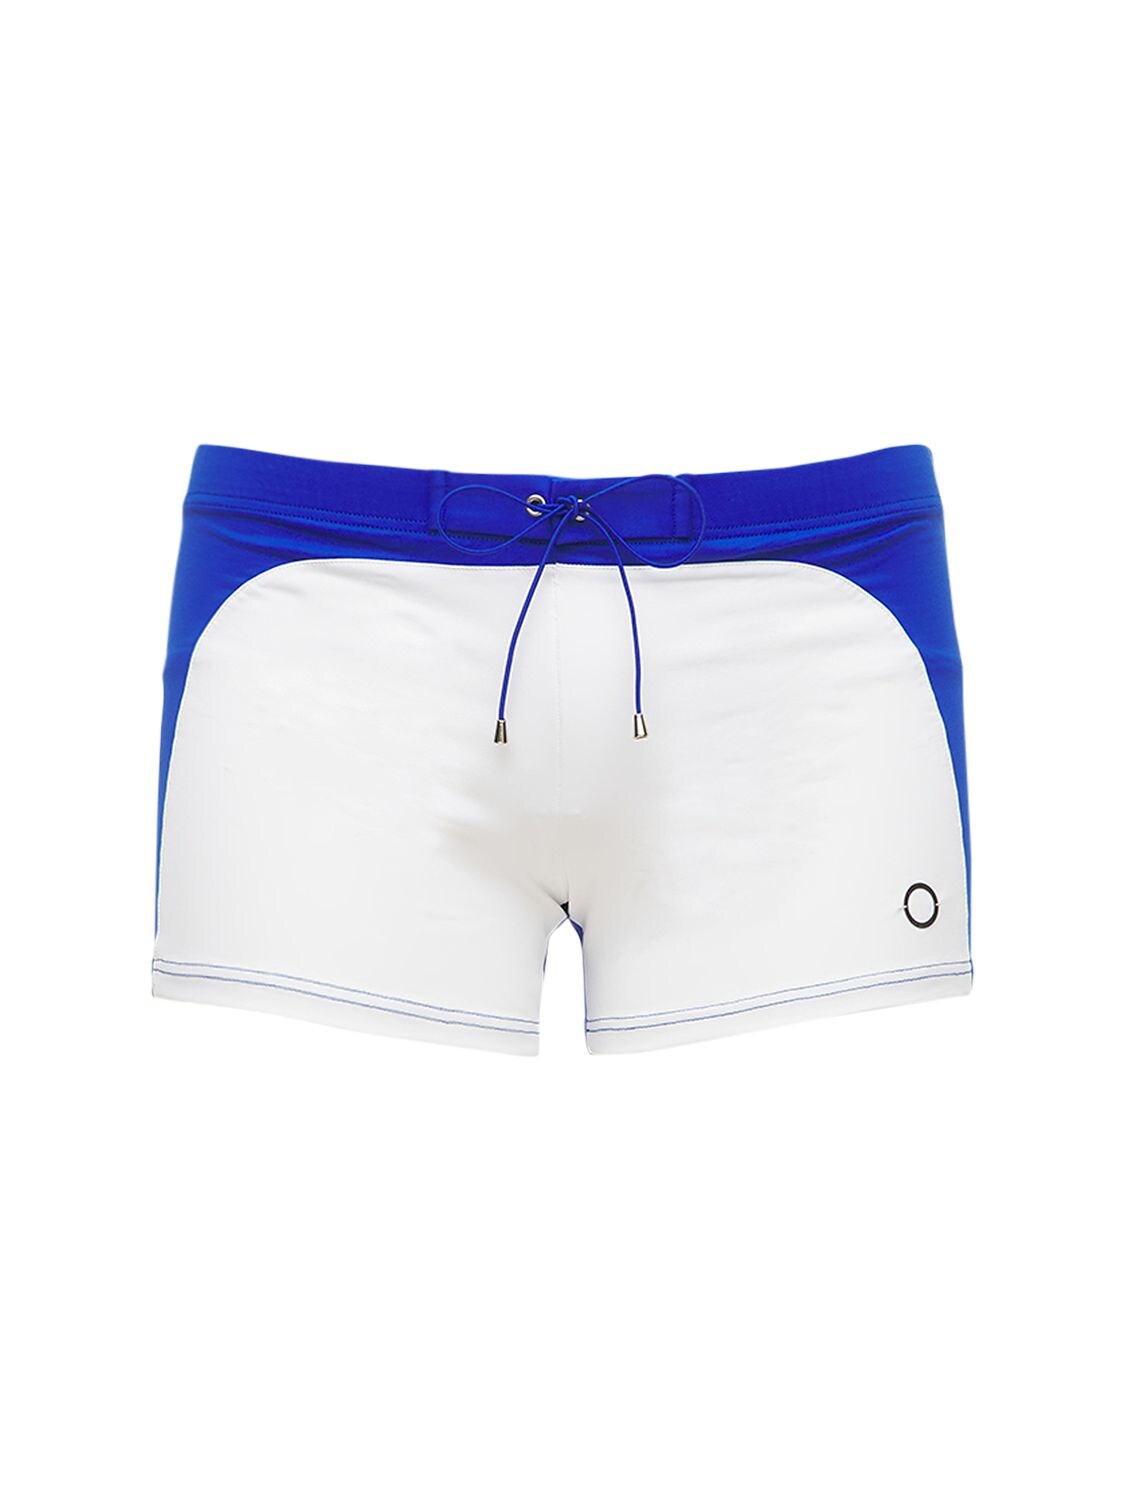 Alessandro Di Marco Marcos Stretch Nylon Swim Shorts In White,blue